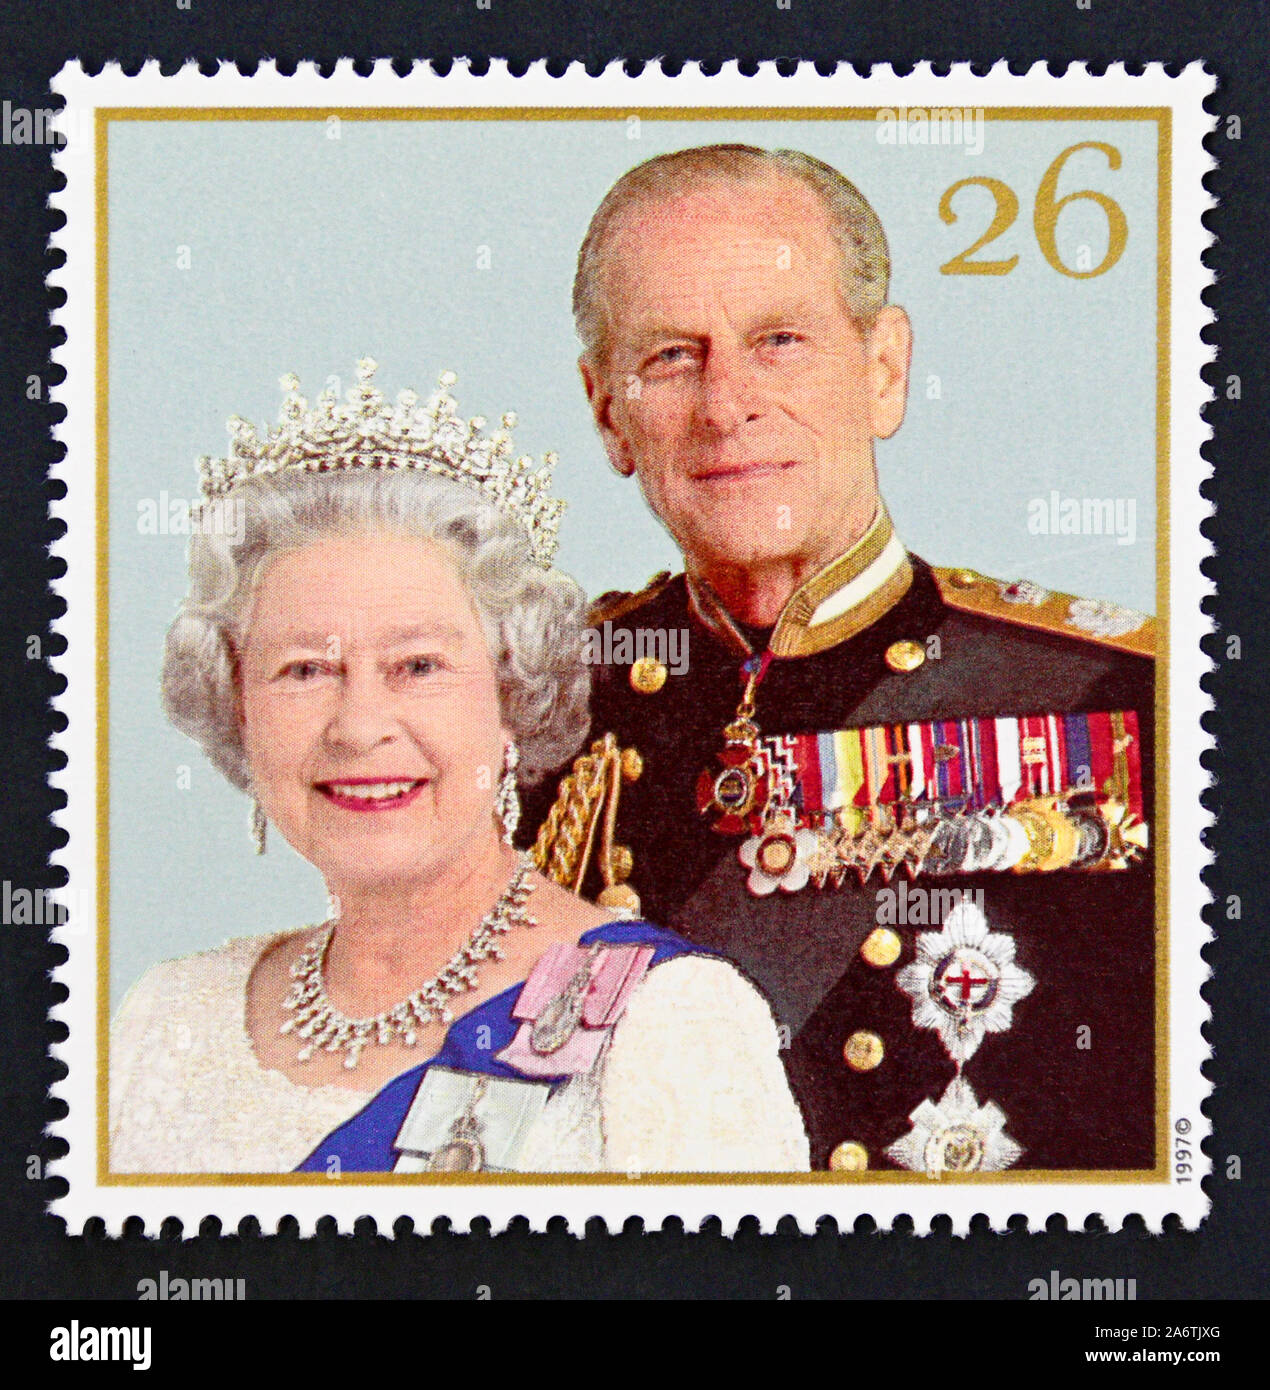 Briefmarke. Großbritannien. Königin Elizabeth II. Royal Golden Hochzeit 1997. Königin Elizabeth II. und Prinz Phillip, 1997. 26 s. Stockfoto